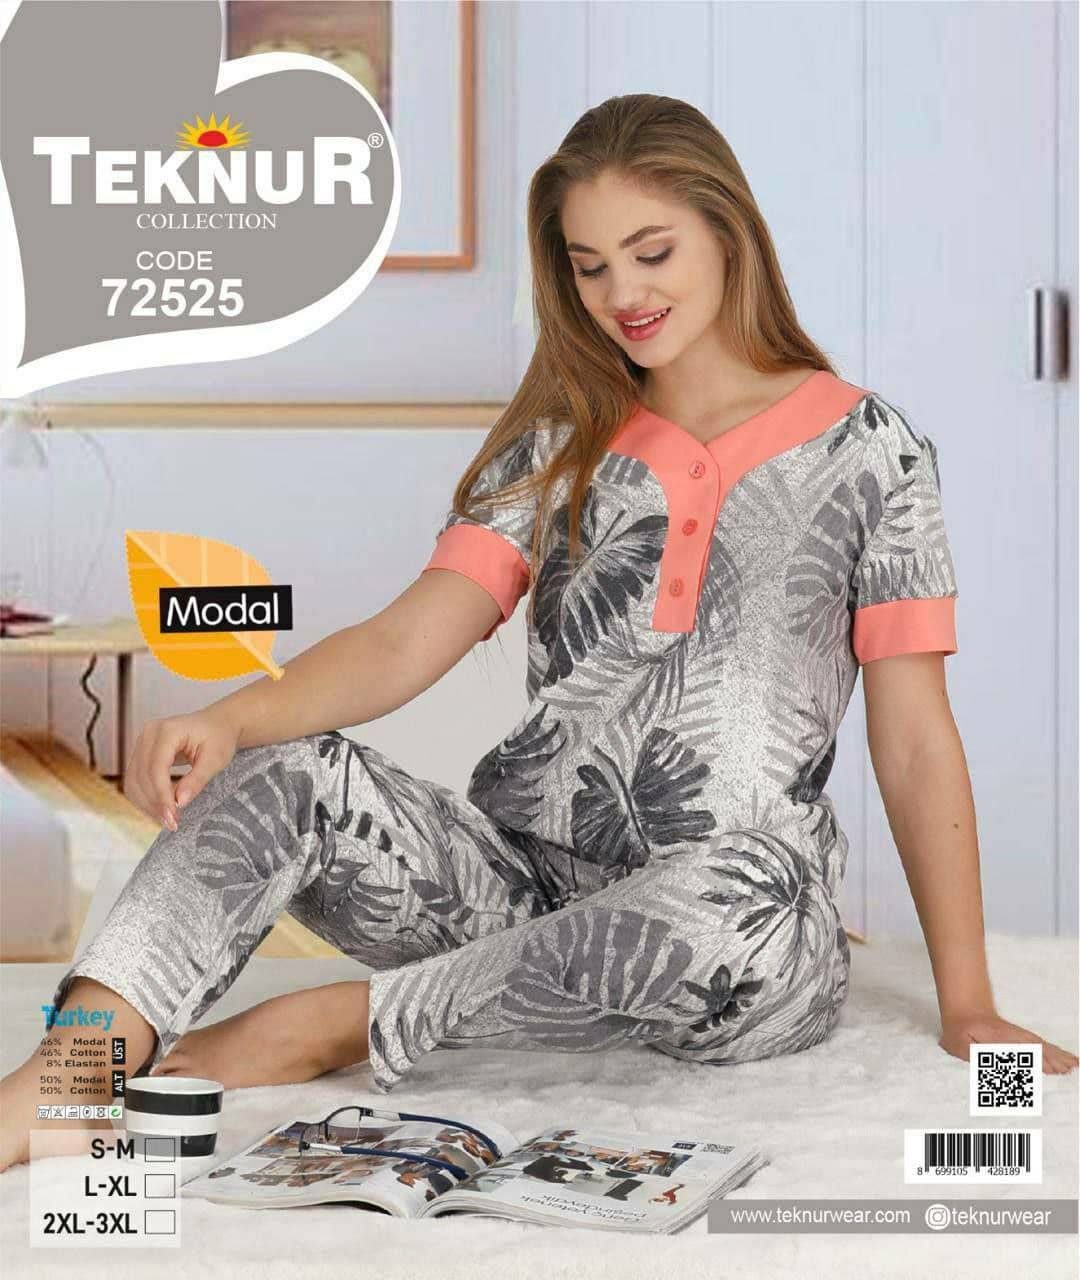 تکنور | Teknur - ست تیشرت و شلوار راحتی زنانه سایز بزرگ 72525 ترک